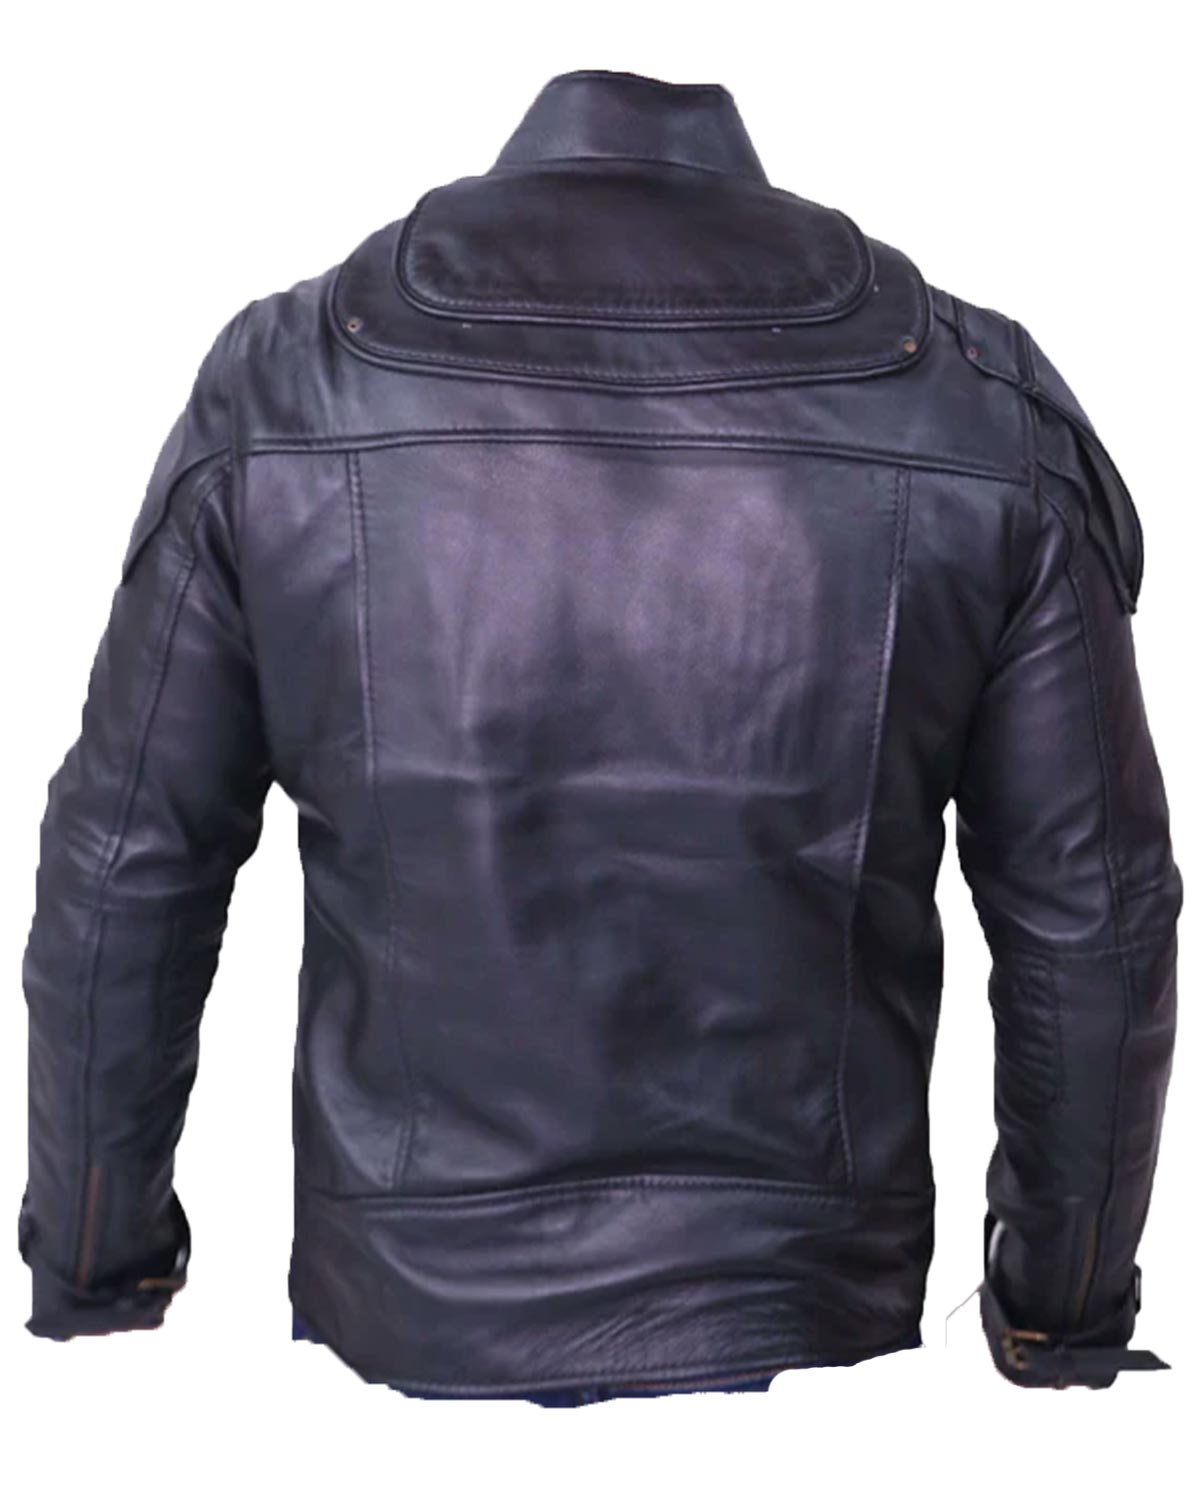 Elite Chris Pratt's Star Lord Black Leather Jacket